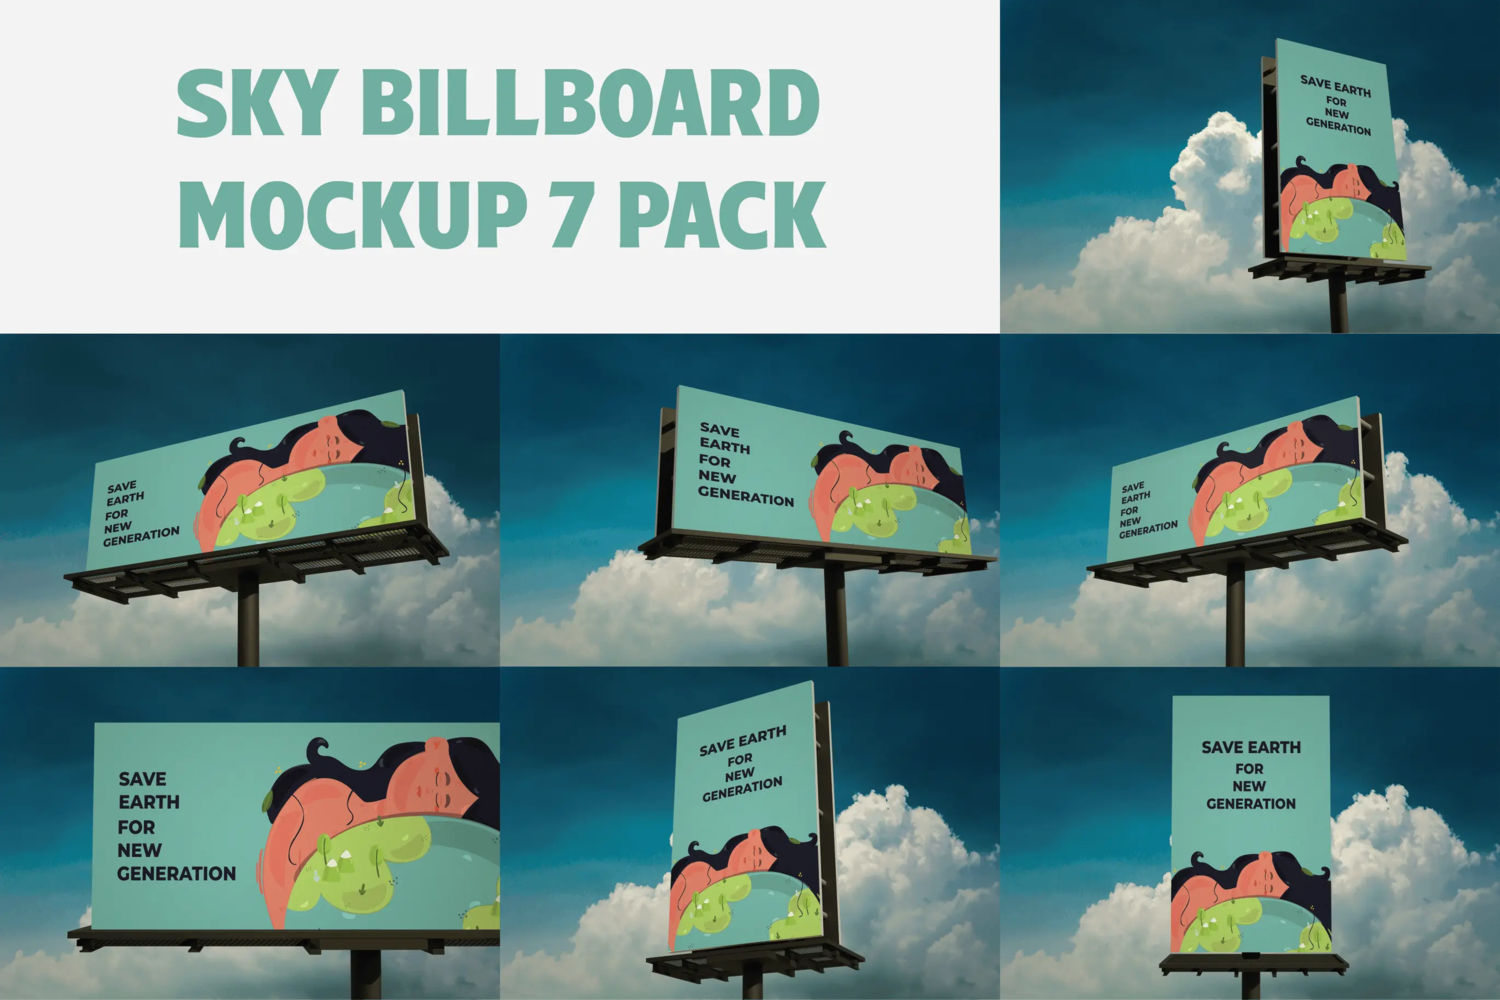 69 高速公路户外广告牌大牌广告位广告展示设计样机 Billboard Mockup Pack – AS